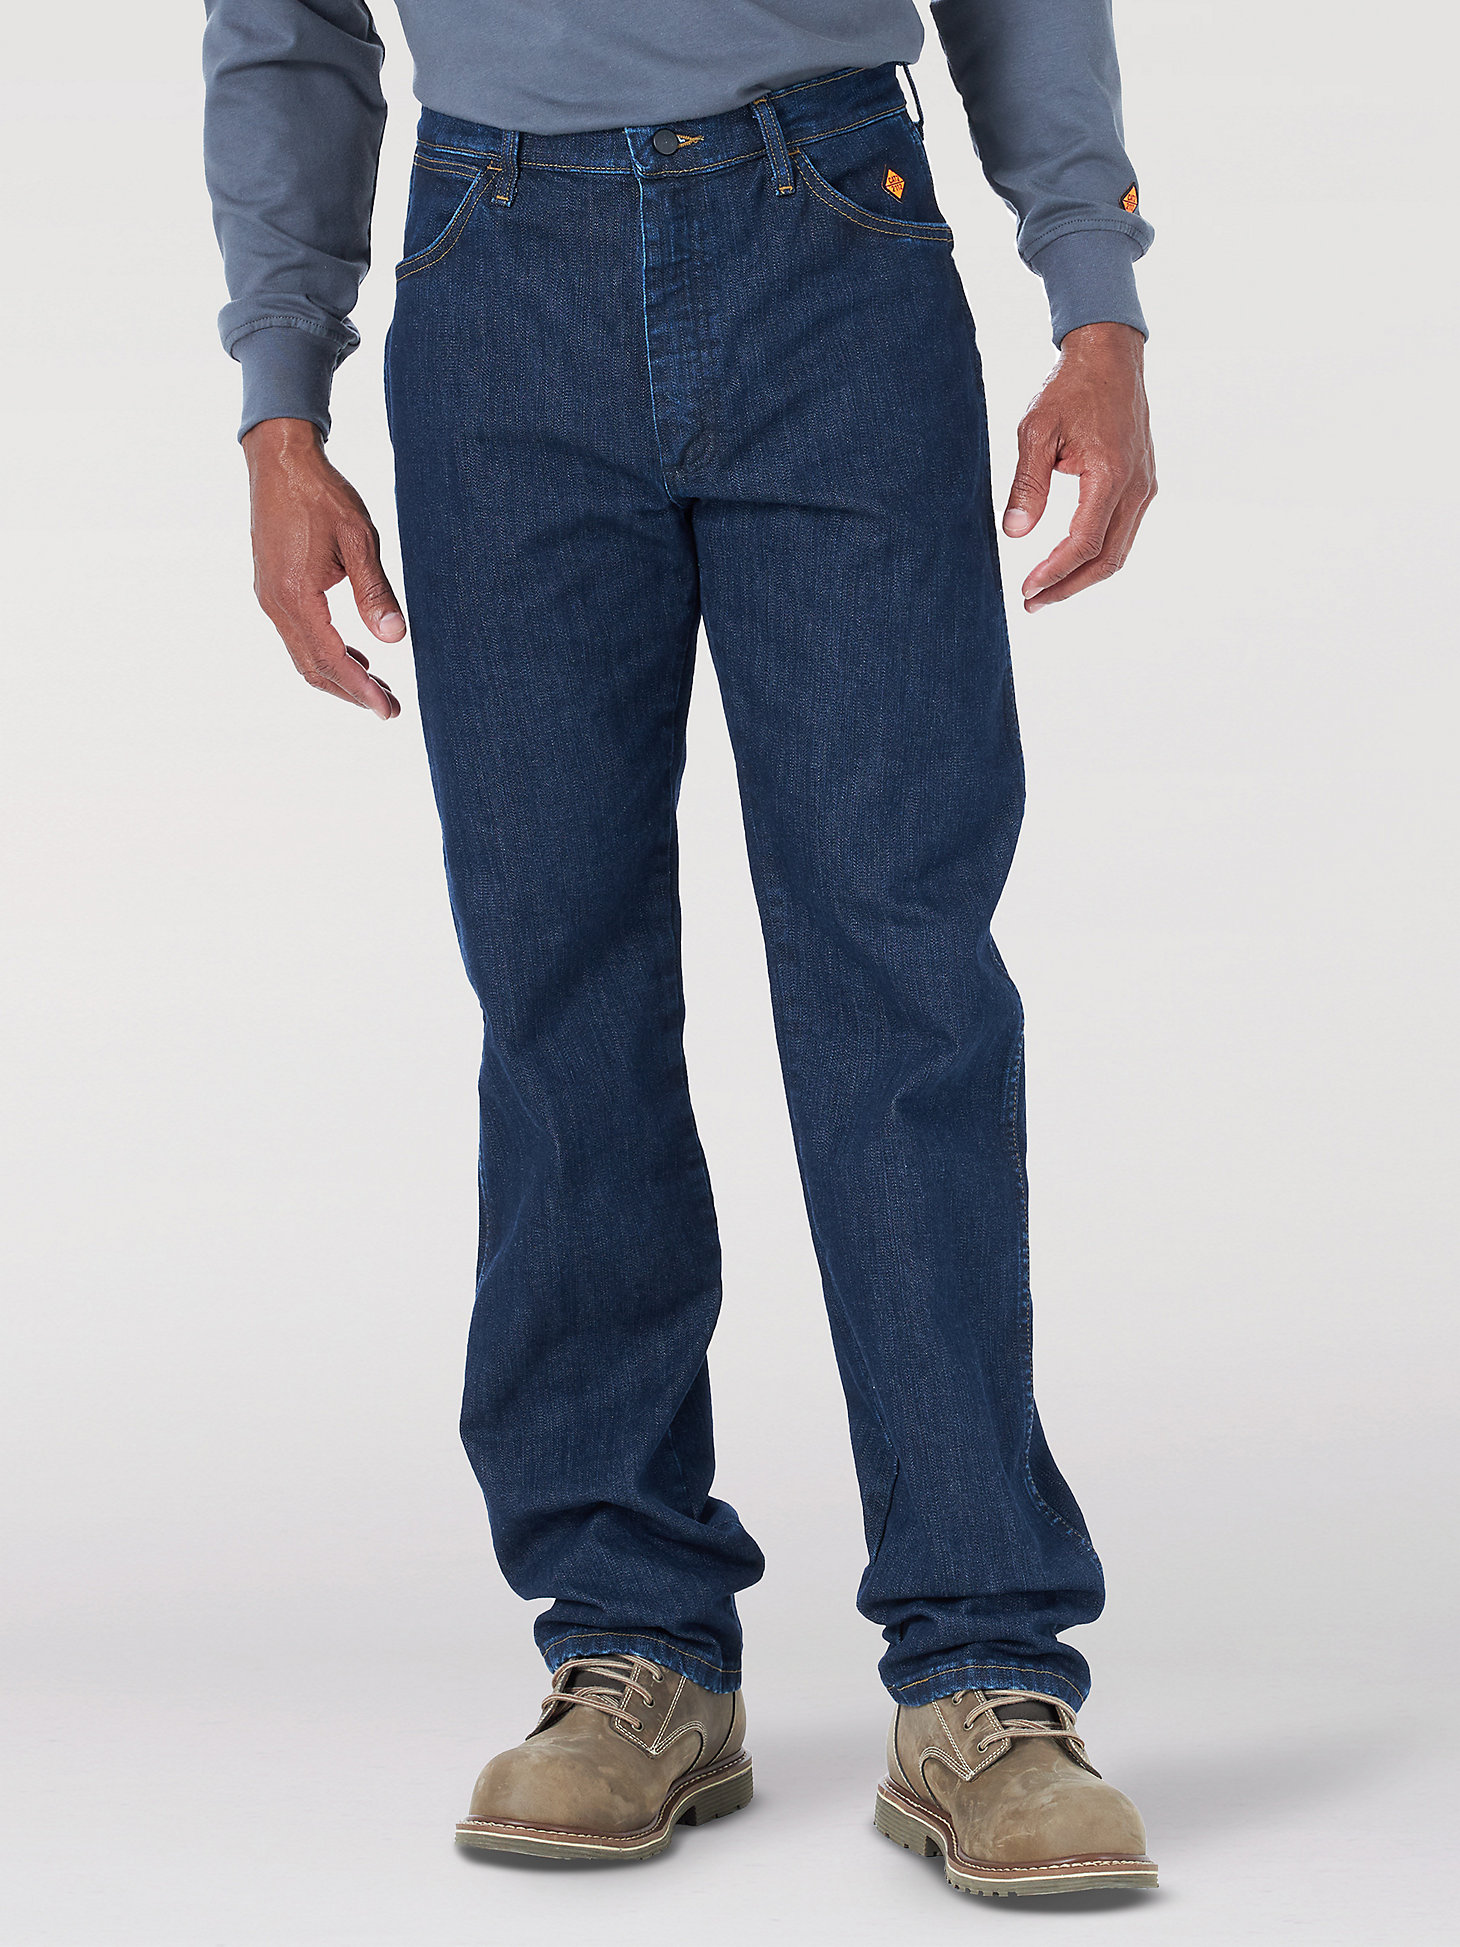 Wrangler® FR Flame Resistant Original Fit Jean in Dark Wash main view